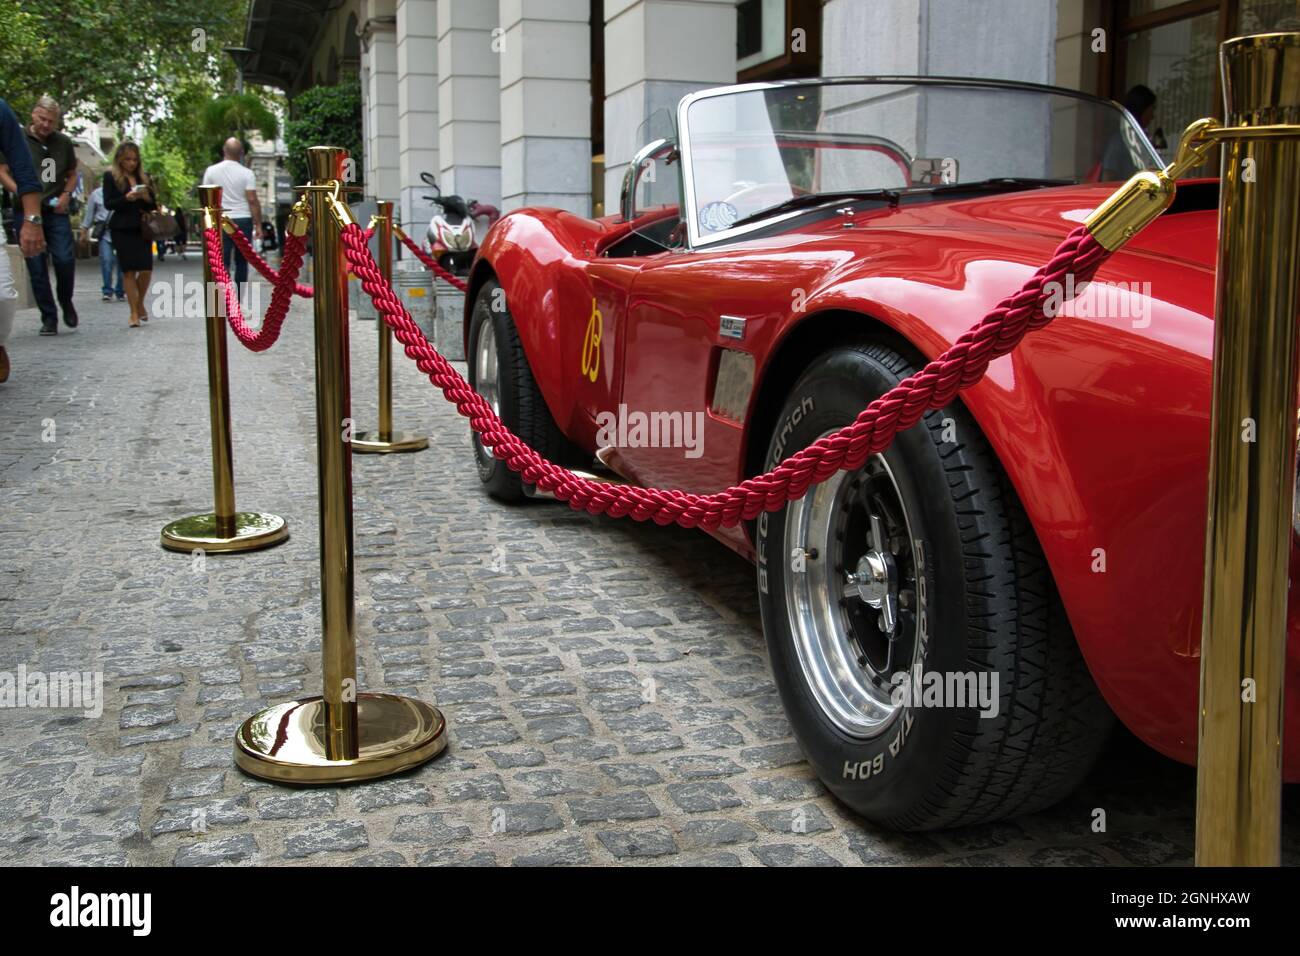 Shelby Cobra der Mythos .Red 1965 Shelby Cobra,Shelby 427 Cobra 1965.designed von Carroll Shelby, um sich mit Ferrari-Autos zu beschäftigen.Hier sehen wir sie in Athen Stockfoto